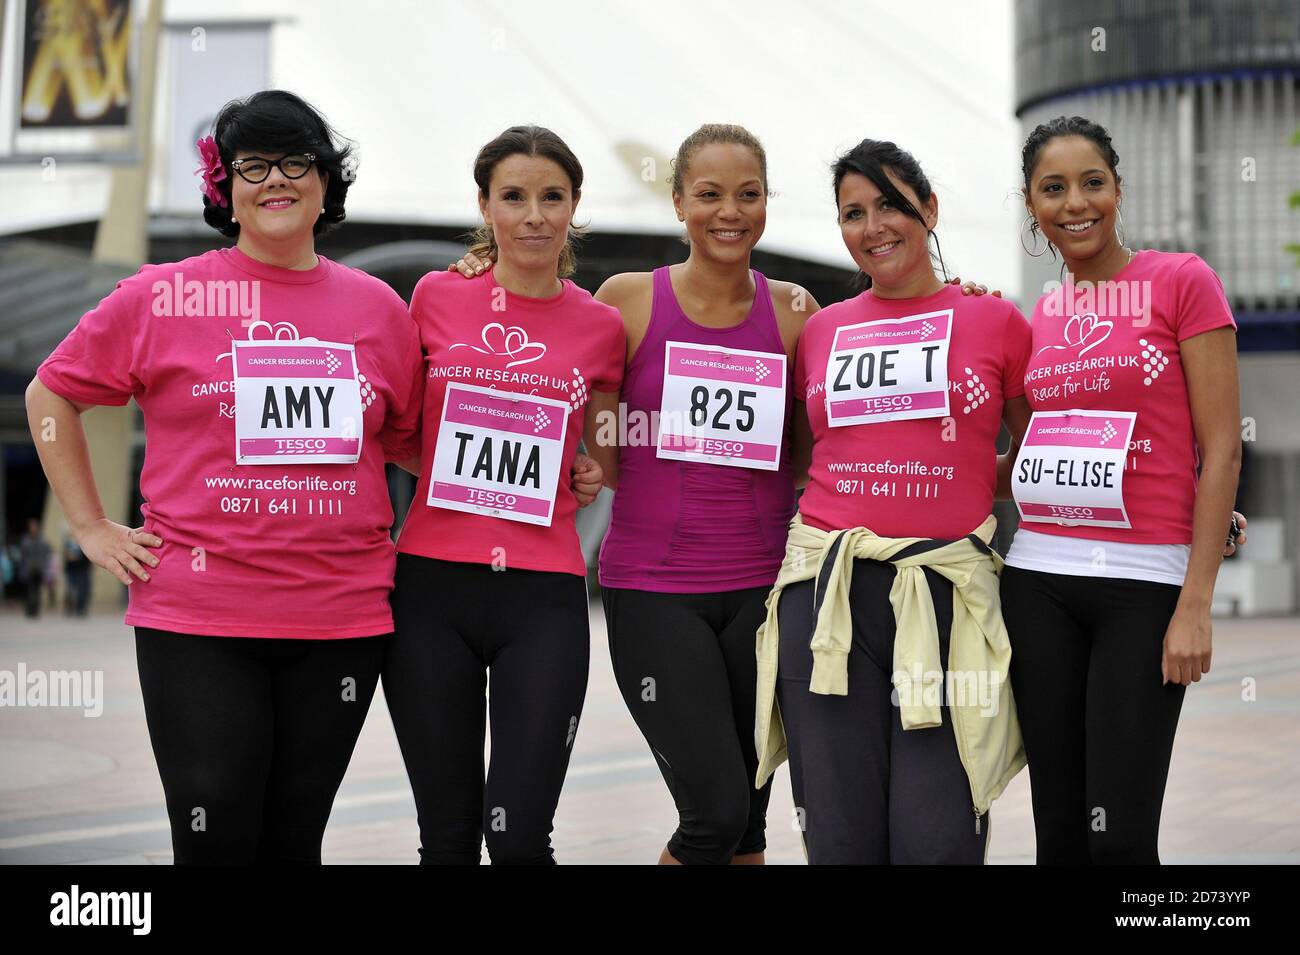 Algunas de las celebridades, incluyendo (l-r) Amy Lame, Tana Ramsay, Angela Griffin, Zoe Tyler y Sue-Elise Nash, participando en la carrera por la vida de Cancer Research UK, en el O2 Arena en Greenwich, Londres. Foto de stock